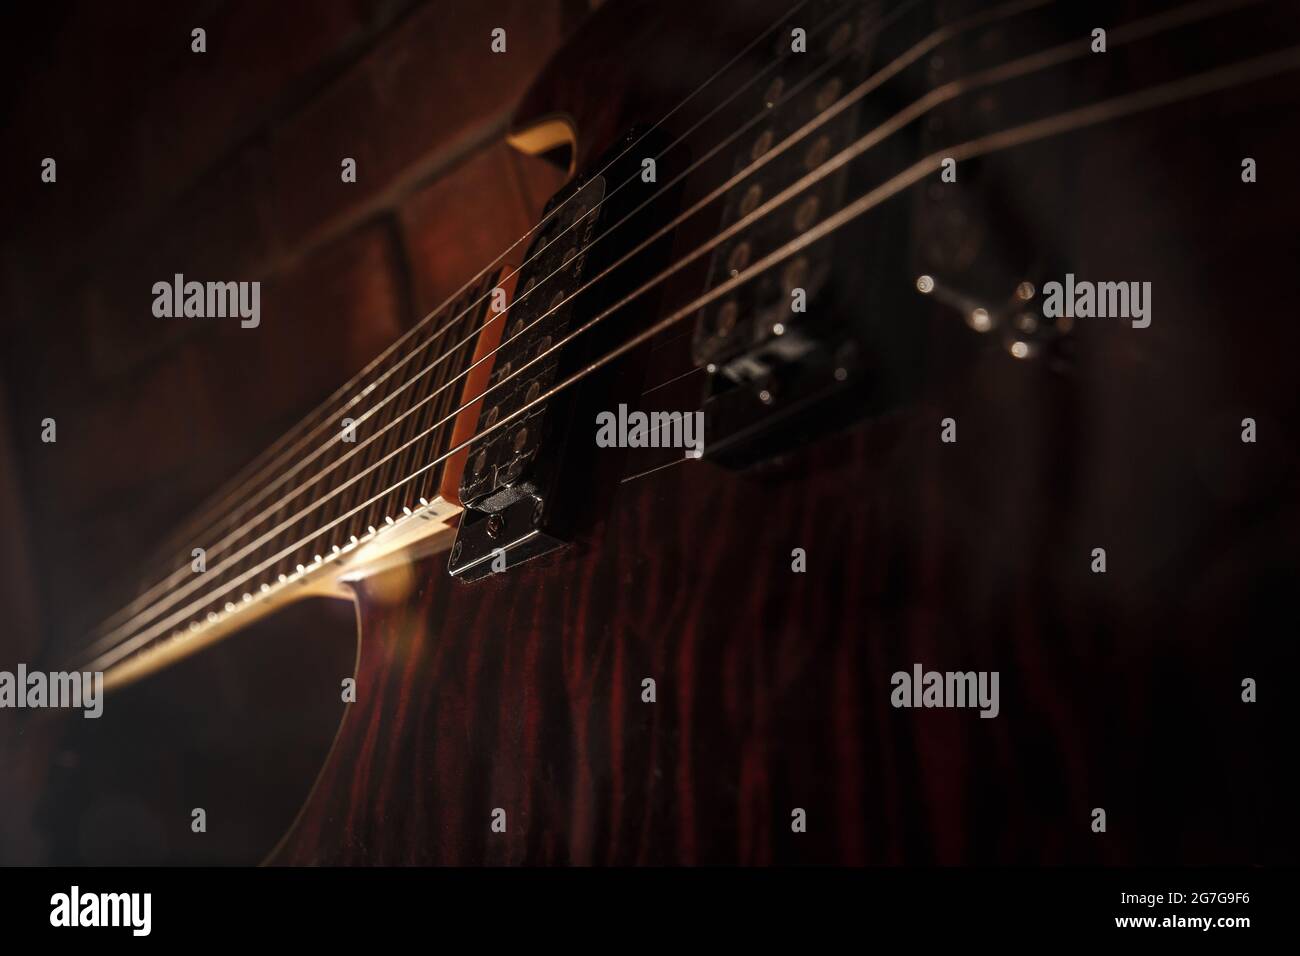 Dettaglio da chitarra elettrica su sfondo scuro Foto Stock